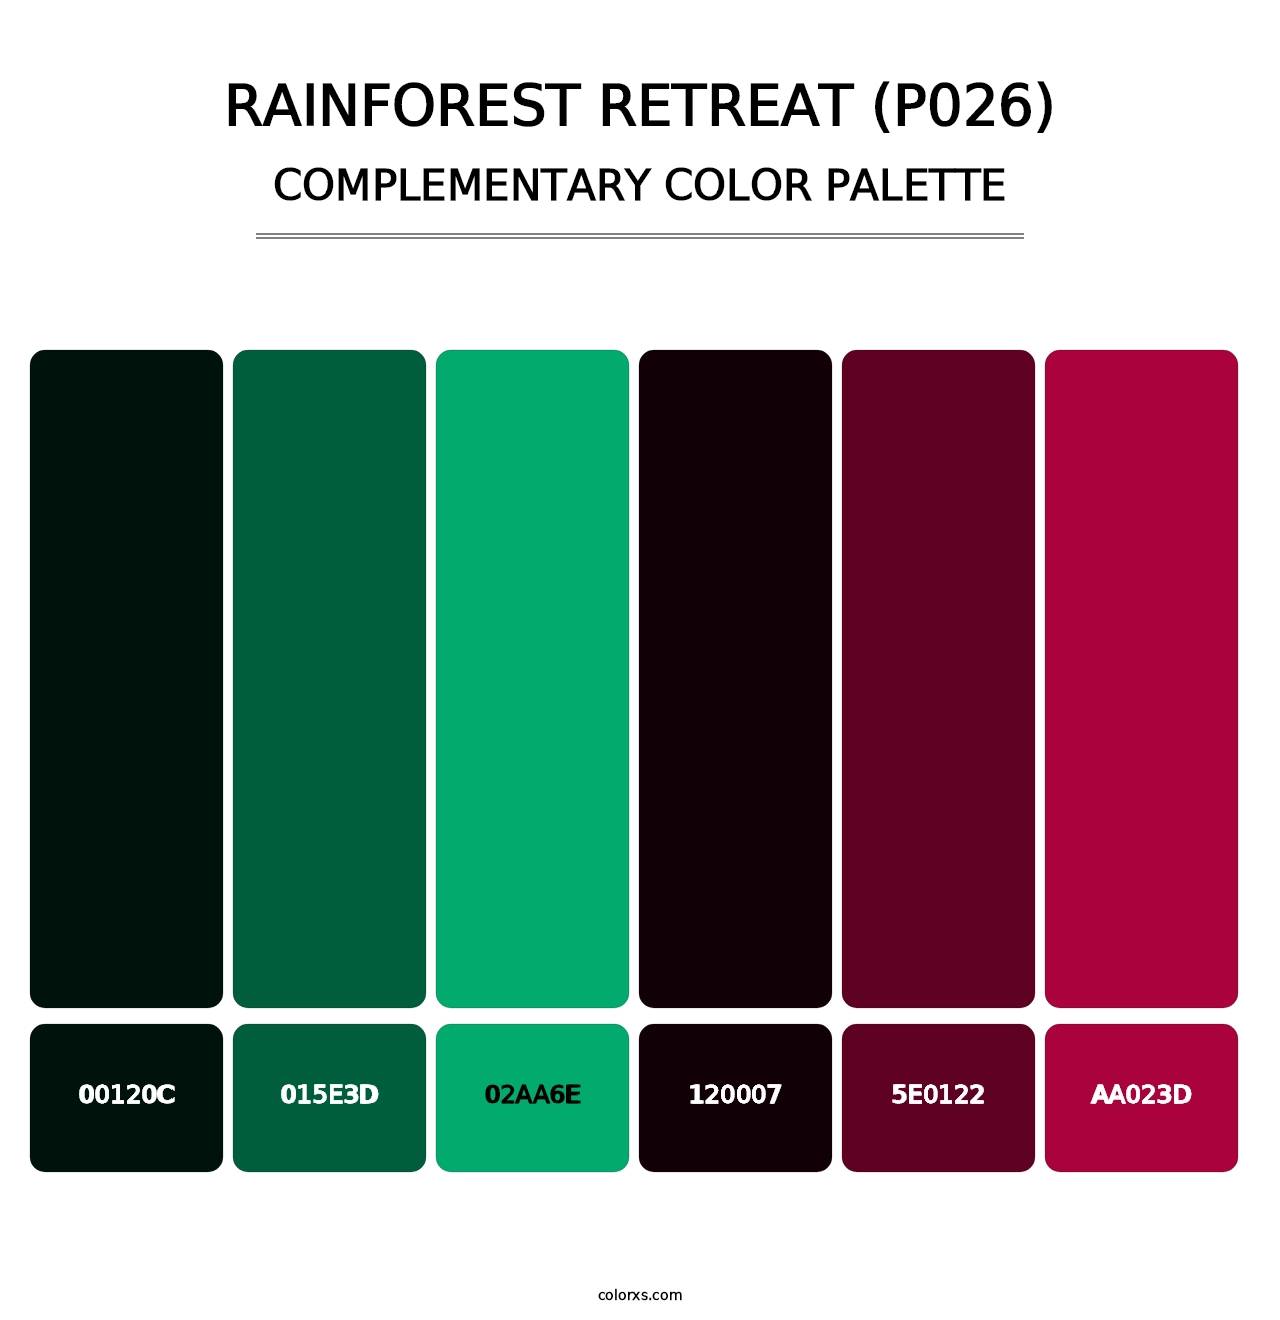 Rainforest Retreat (P026) - Complementary Color Palette